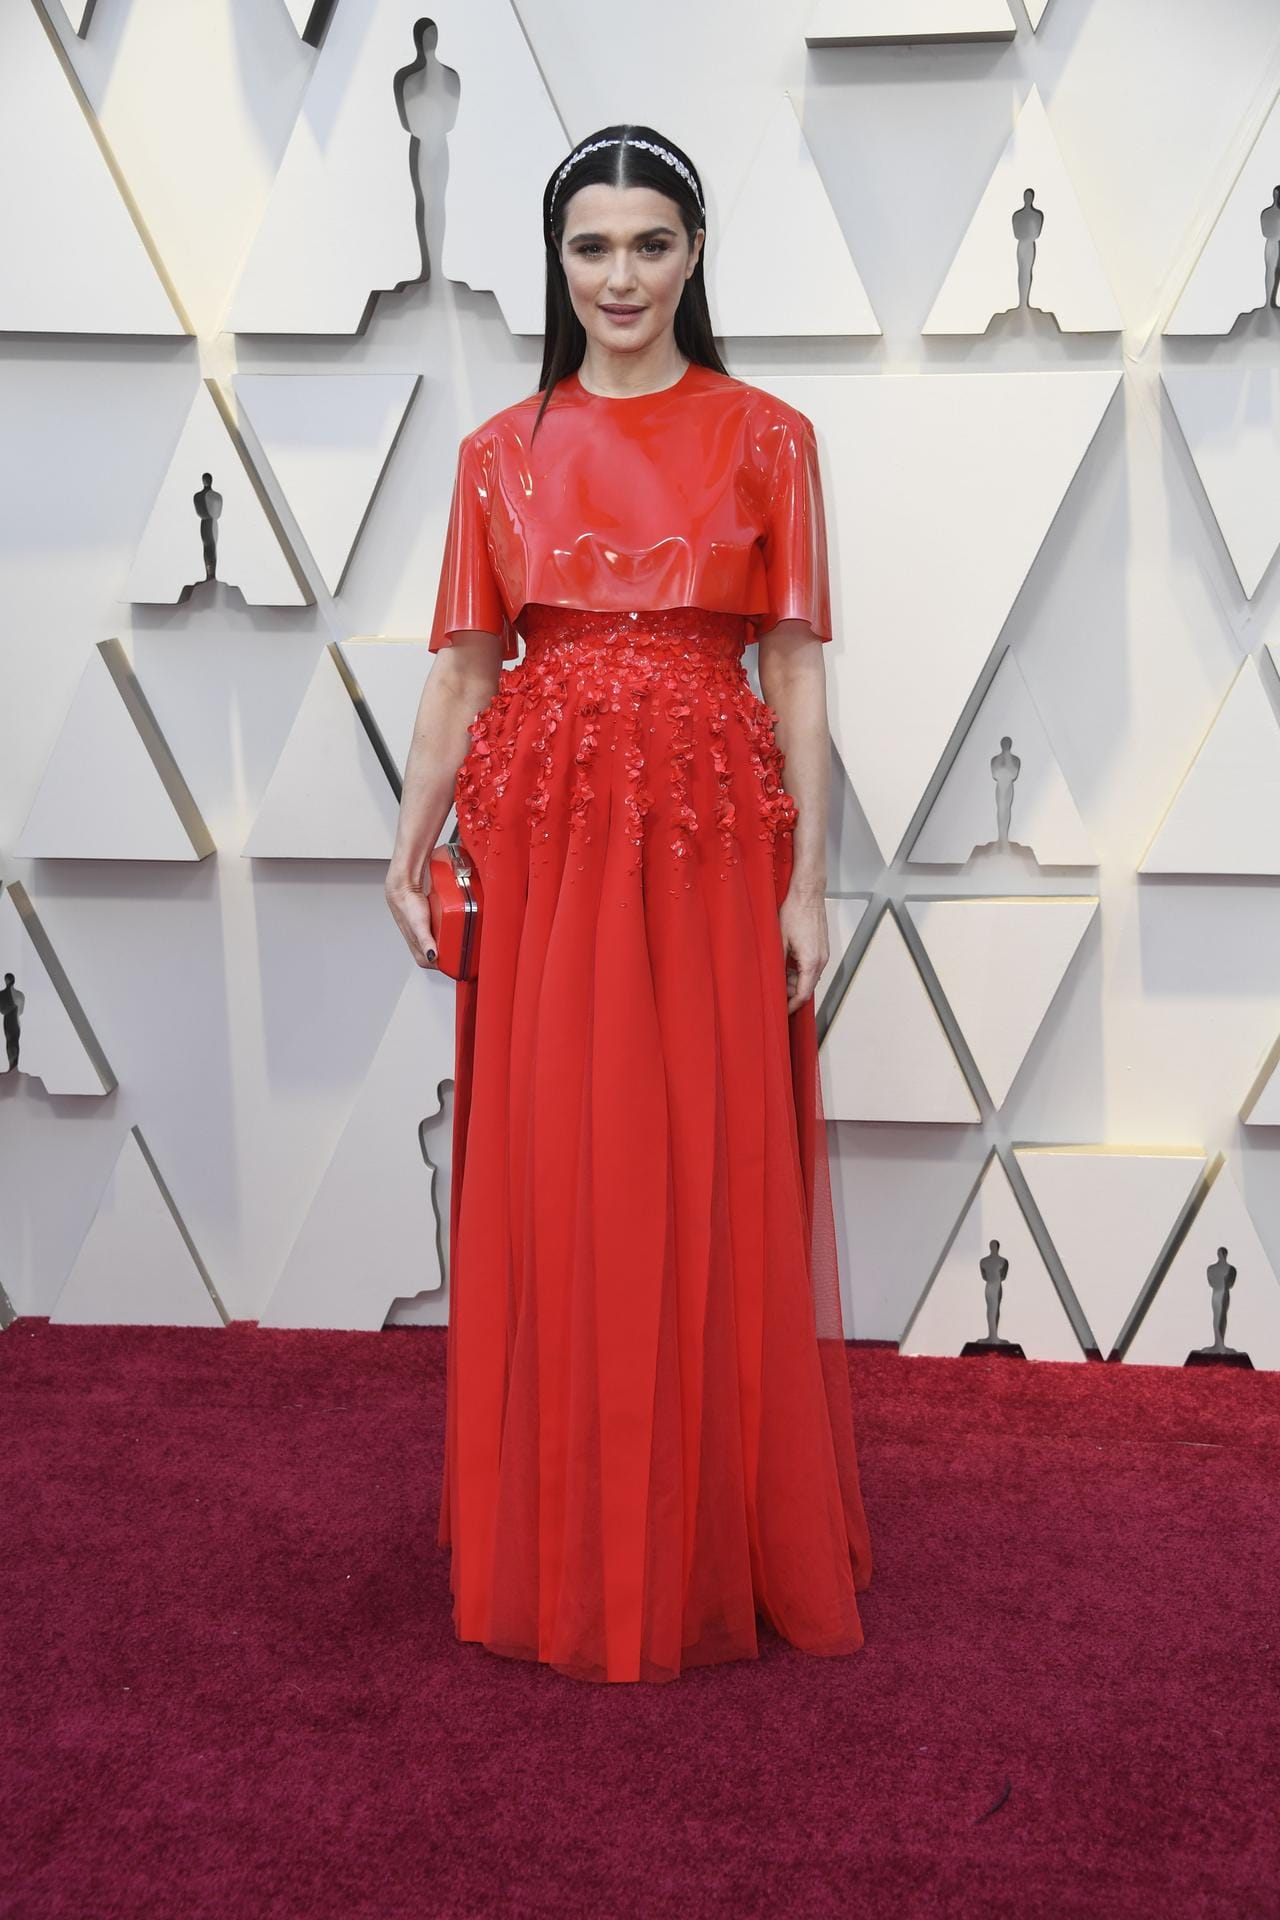 Rachel Weisz: Sie präsentiert ein Kleid in intensivem Rot.